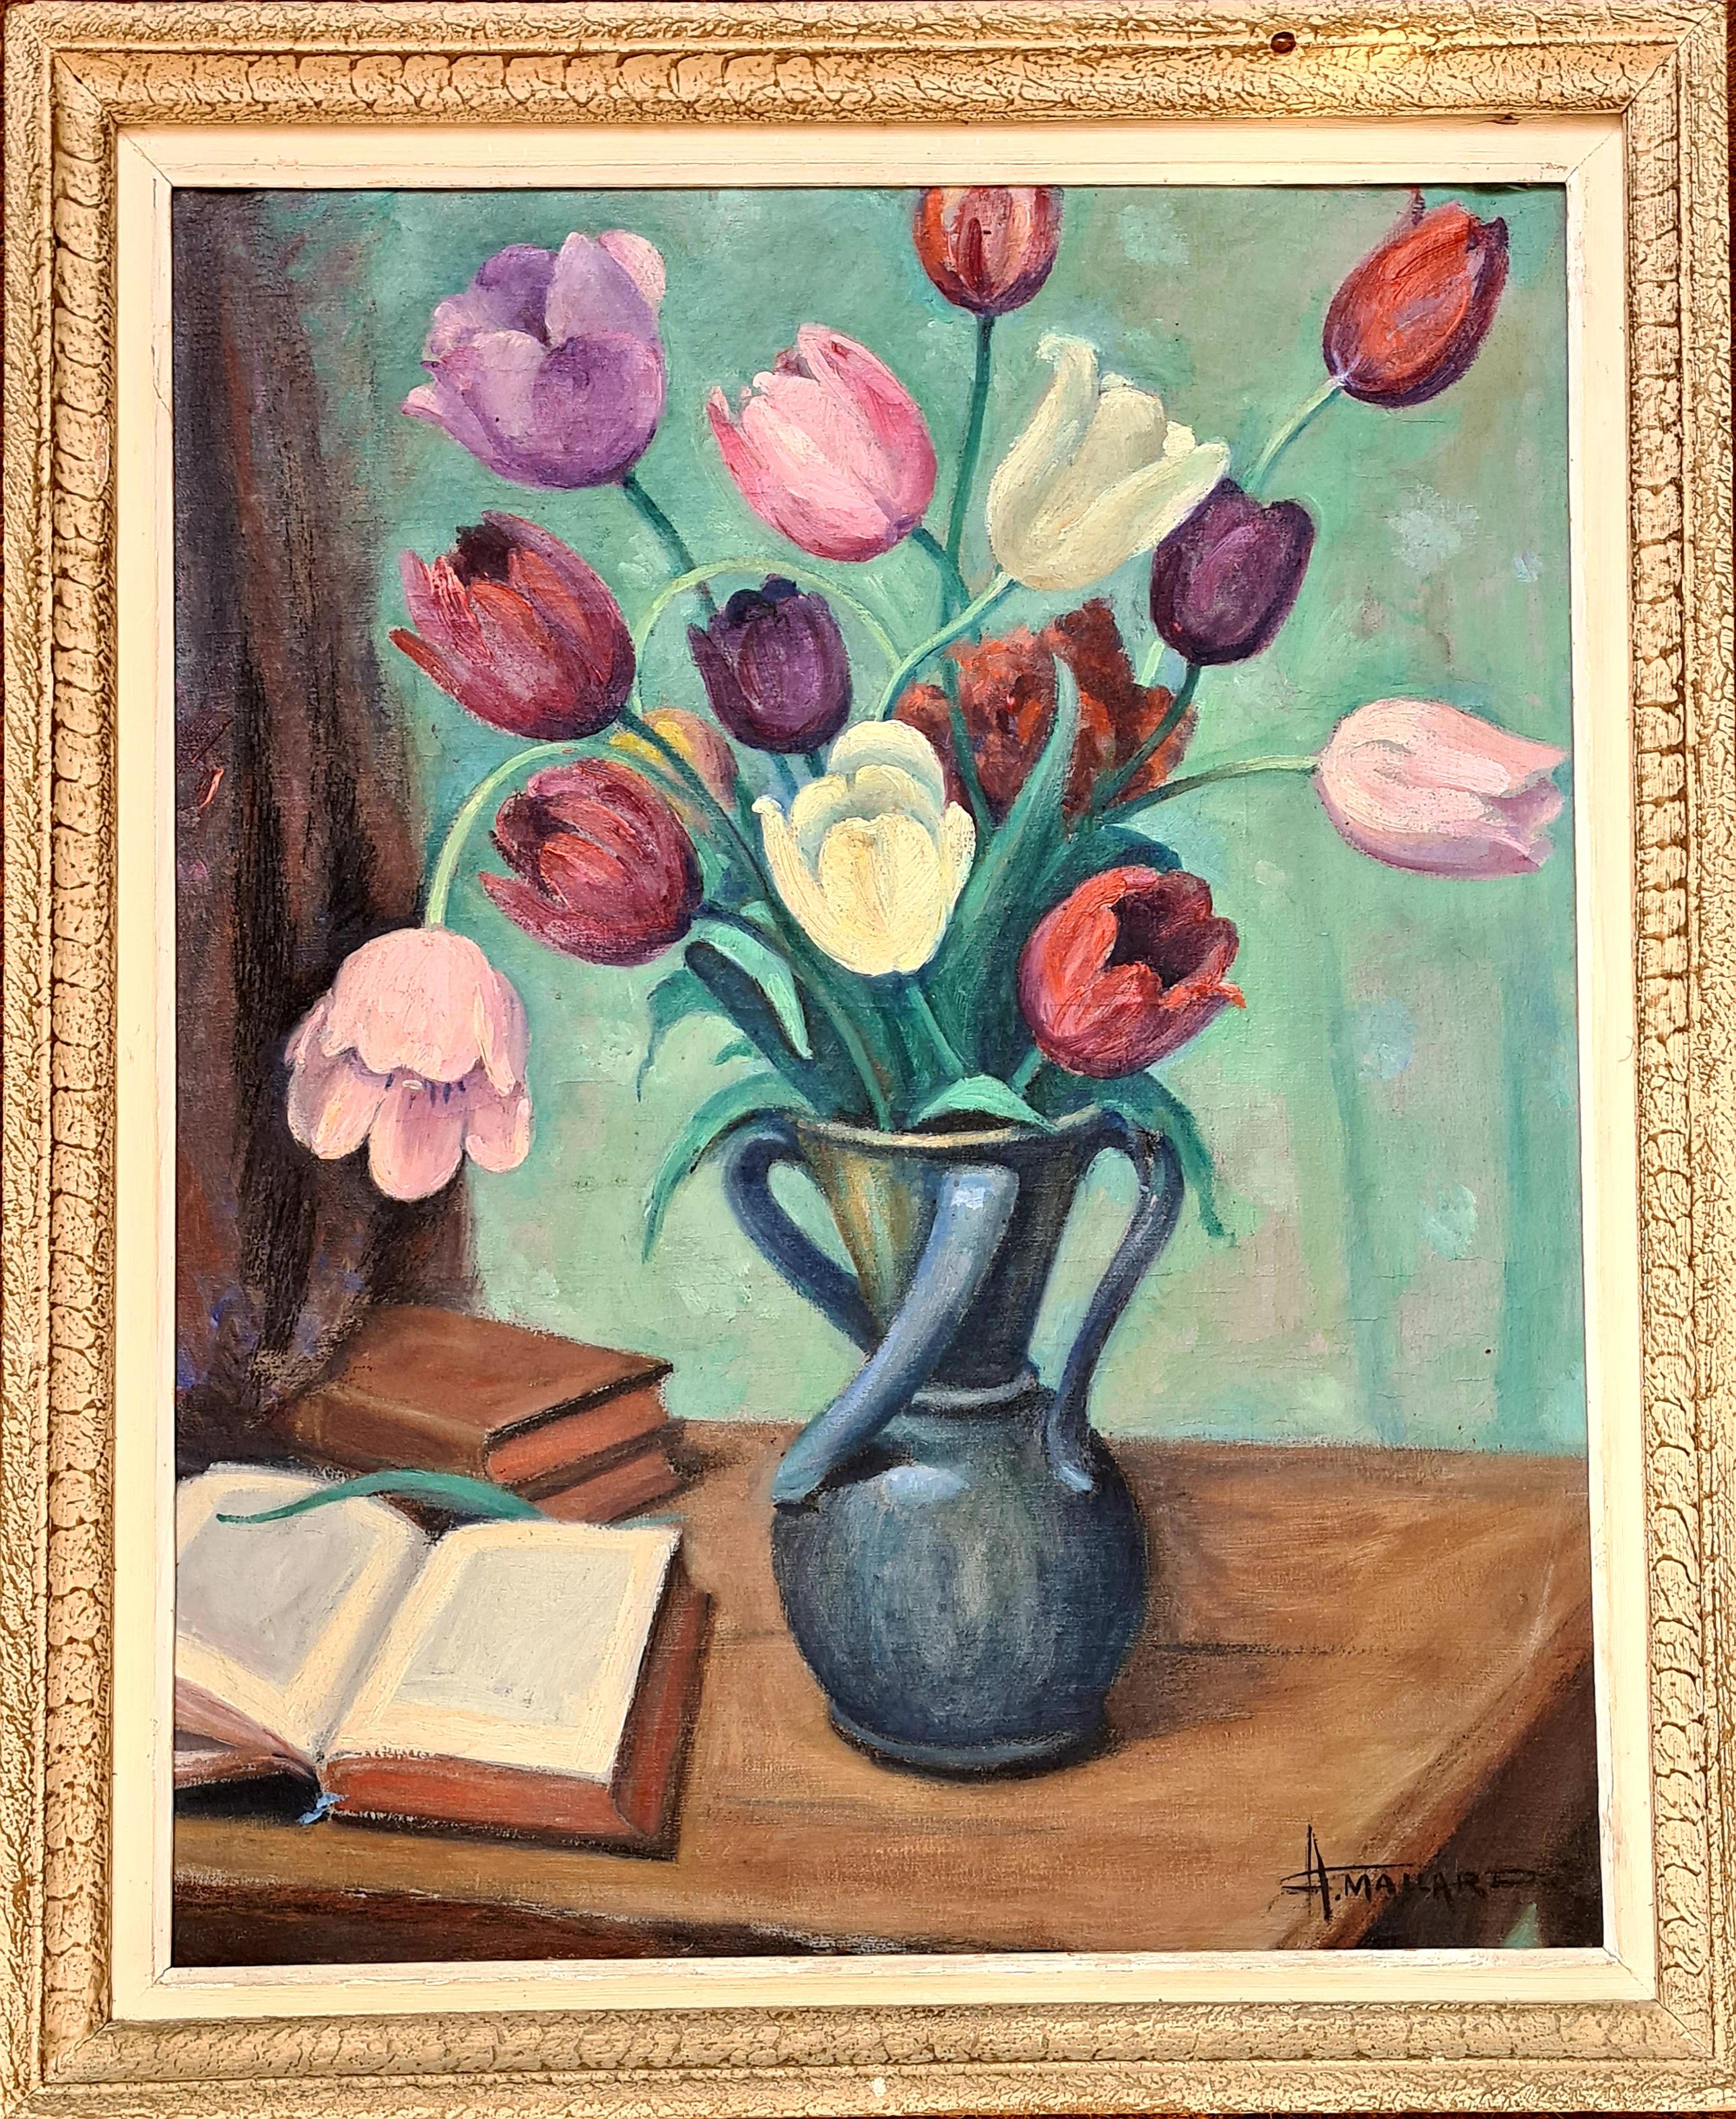 Tulips, Art-Déco-Stillleben auf Leinwand mit Tulpen in einer Vase in einem Interieur